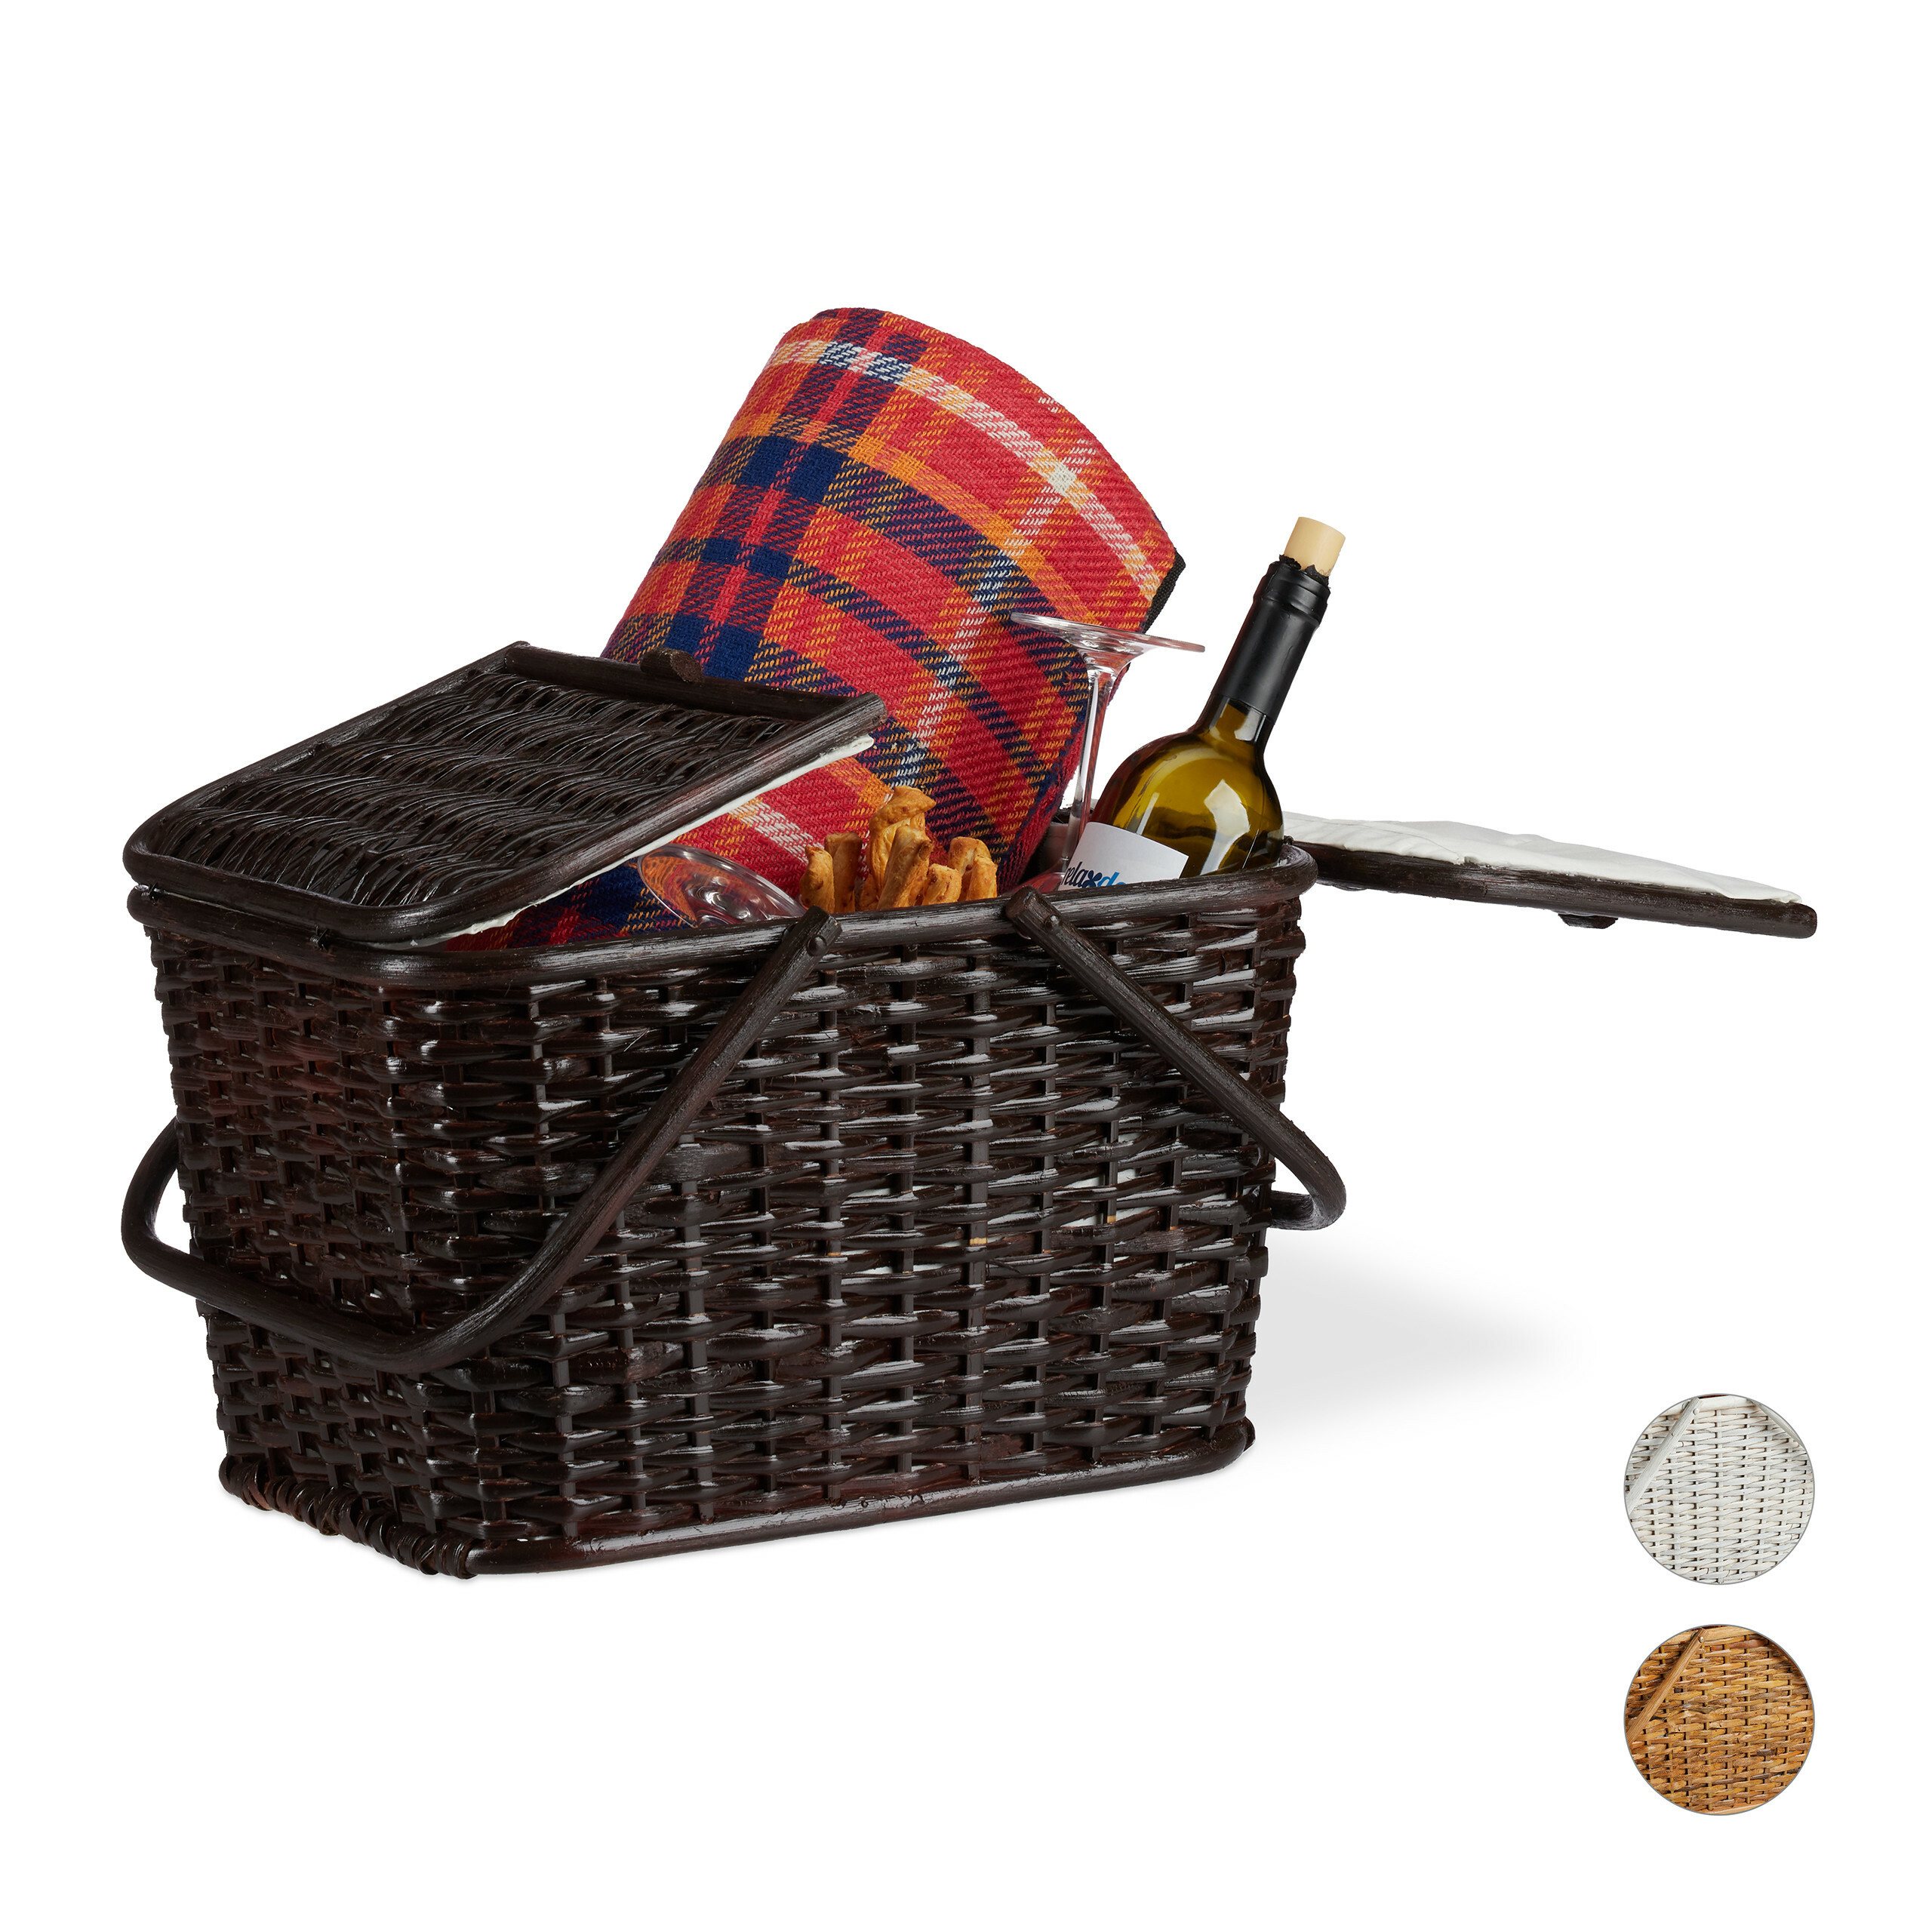 Picknickkorb Geflochten Korb aus Rattan Korb mit 2 Deckeln Weidenkorb Einkaufskorb Aufbewahrungskorb Picknickorb